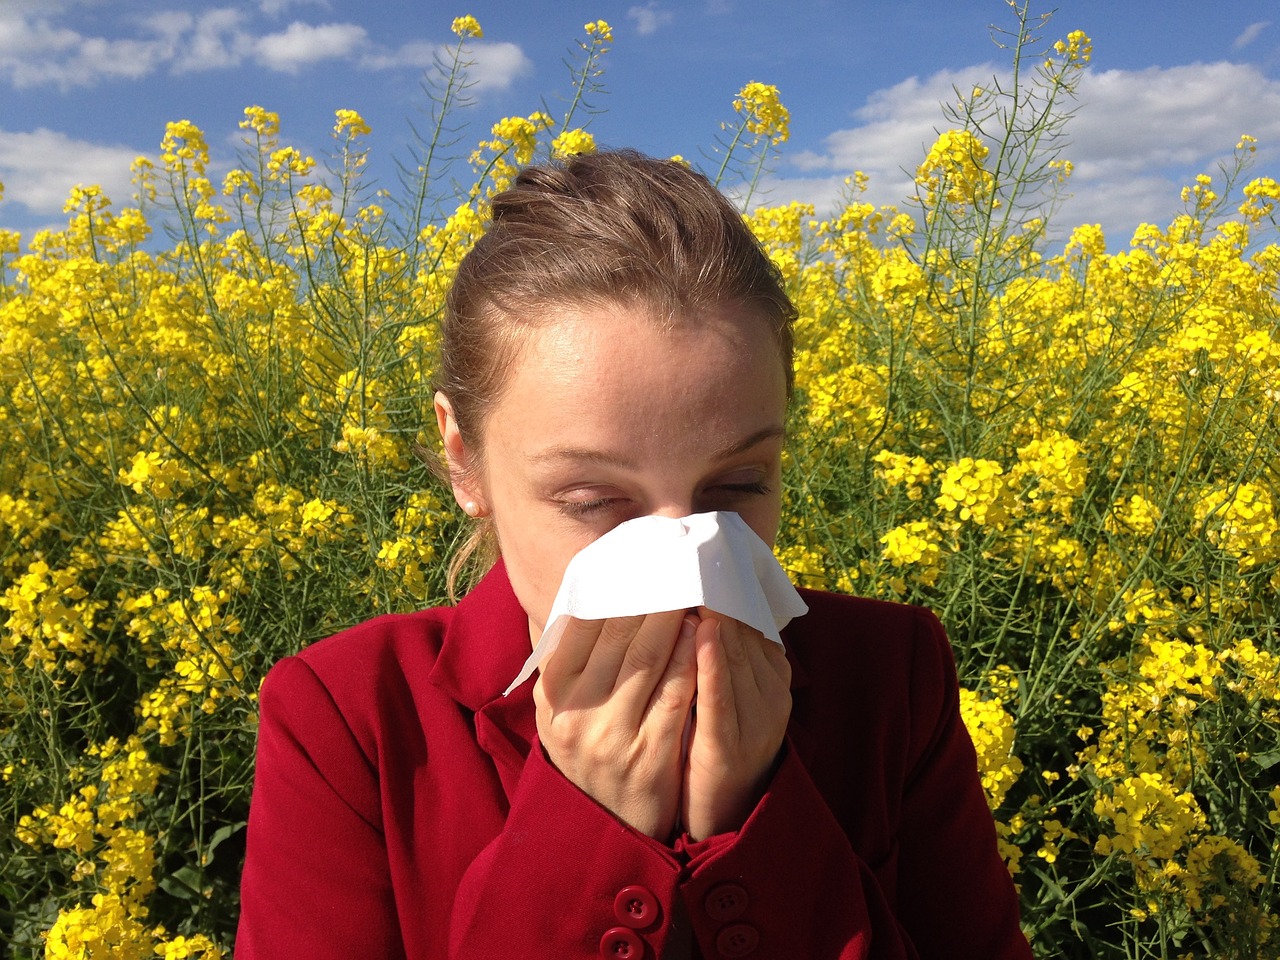 Guarire dalle allergie si può: lo spiega in un libro Sabrina De Federicis